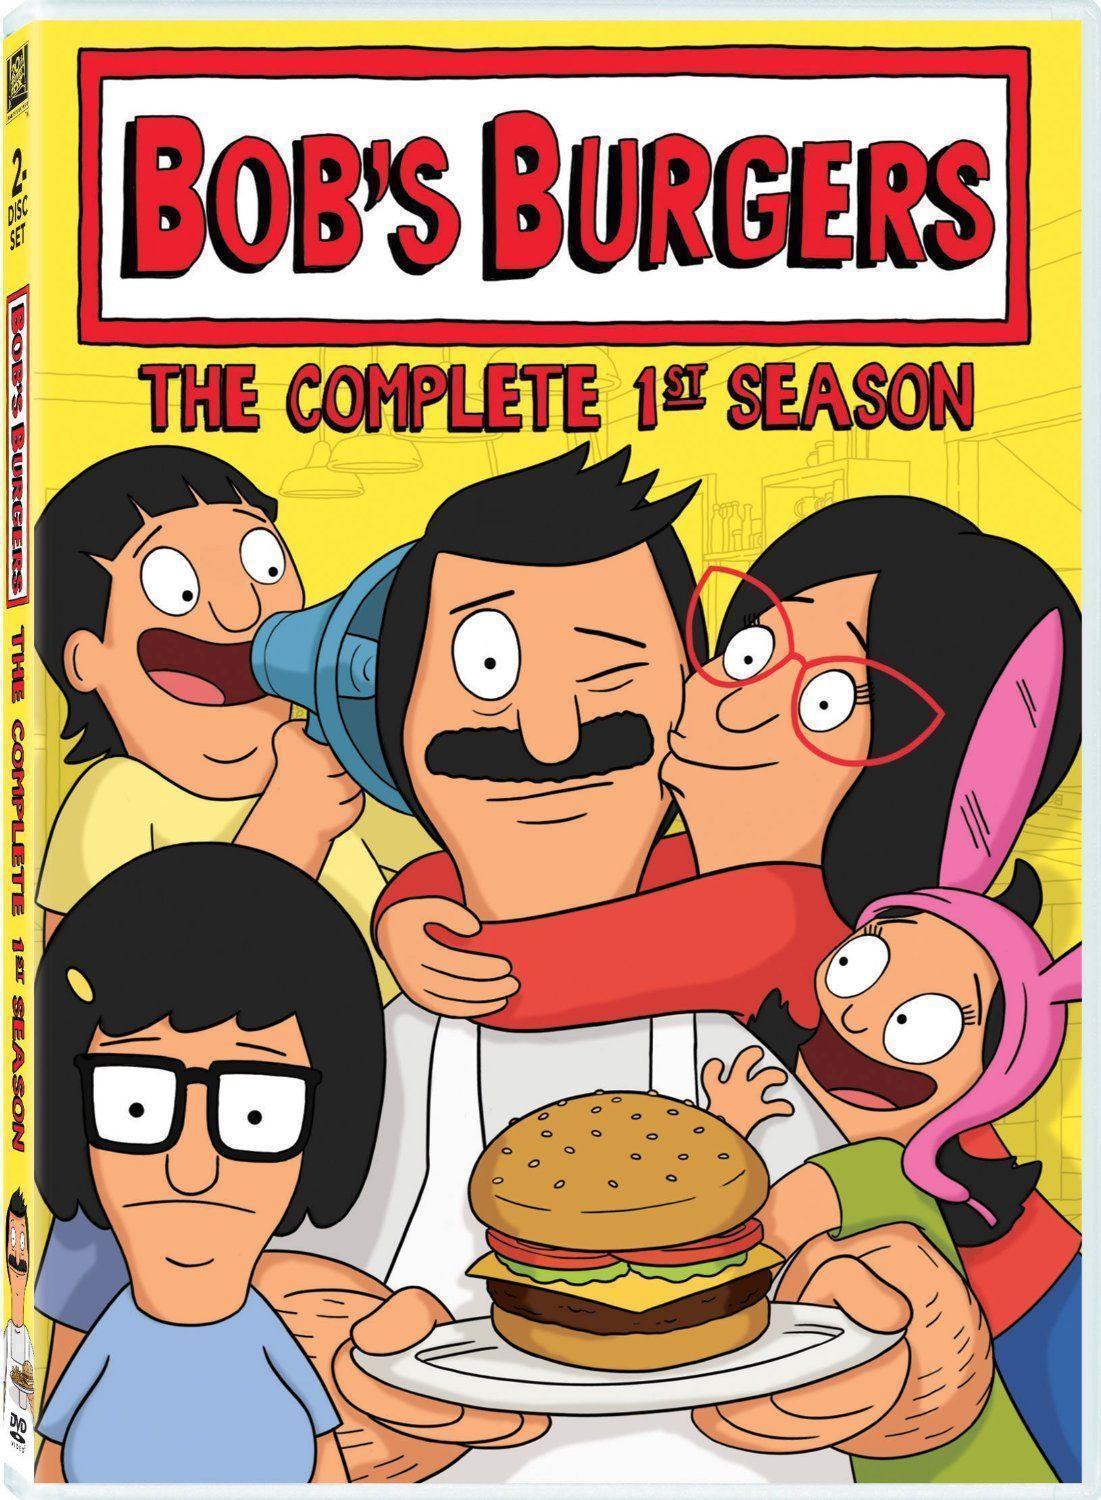 Funny Bob's Burgers Wallpapers